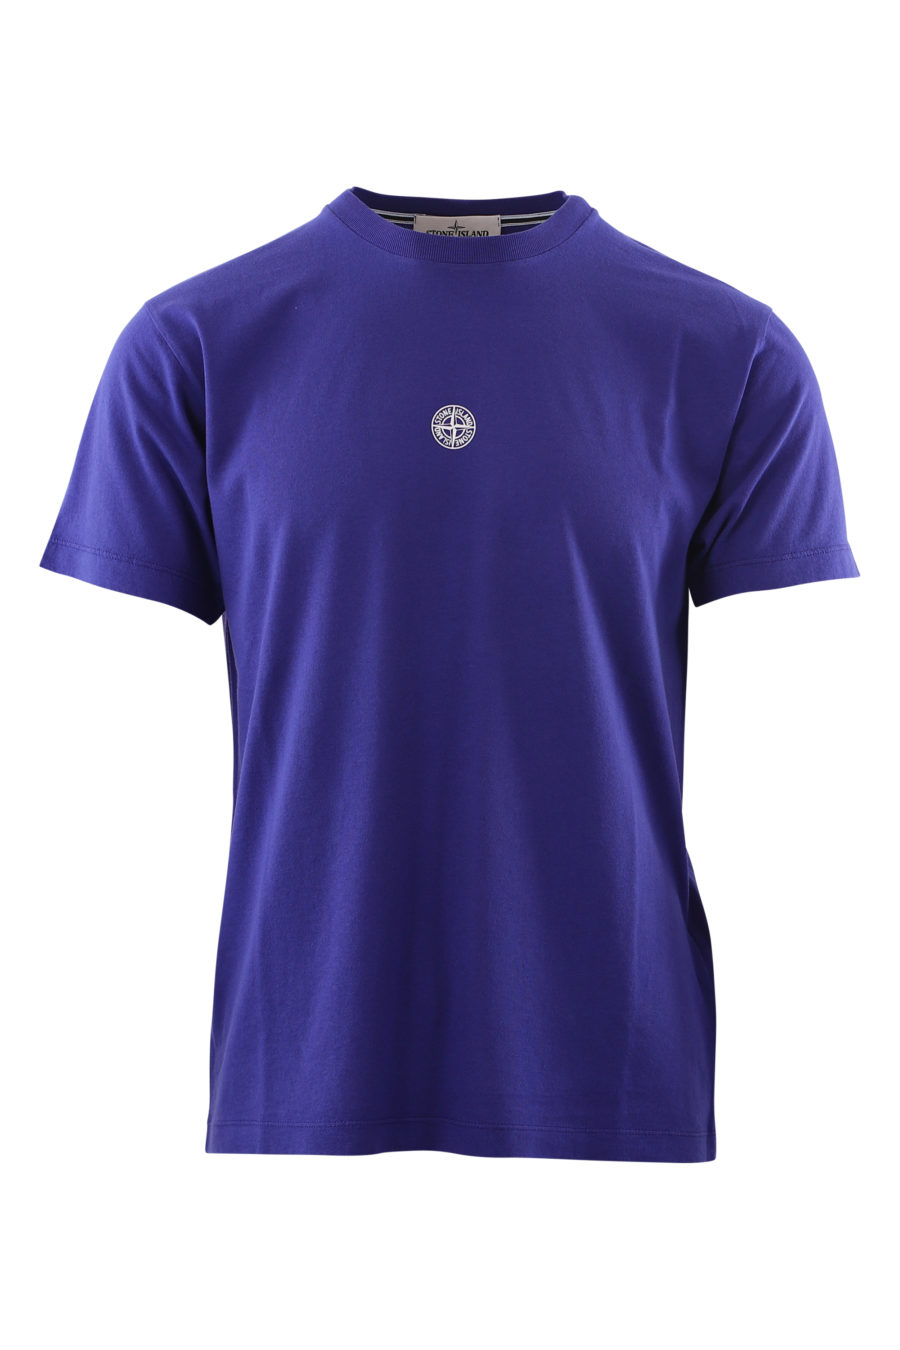 Camiseta morada con coordenadas espalda - IMG 6604